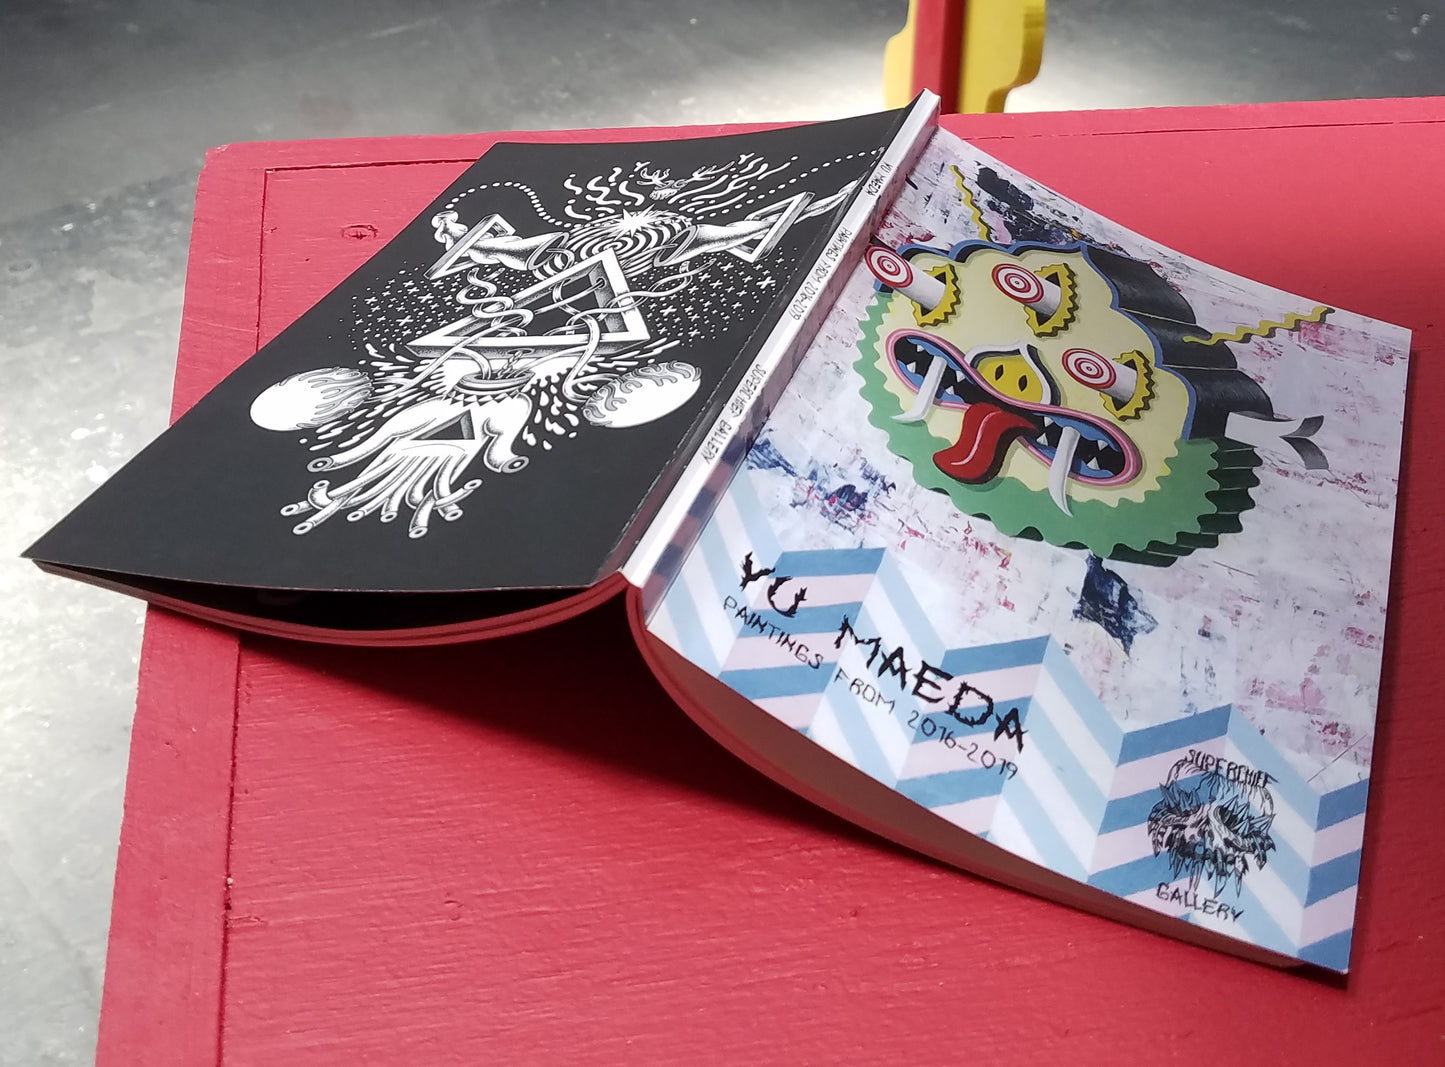 Yu Maeda Book "Paintings from 2016-2019"